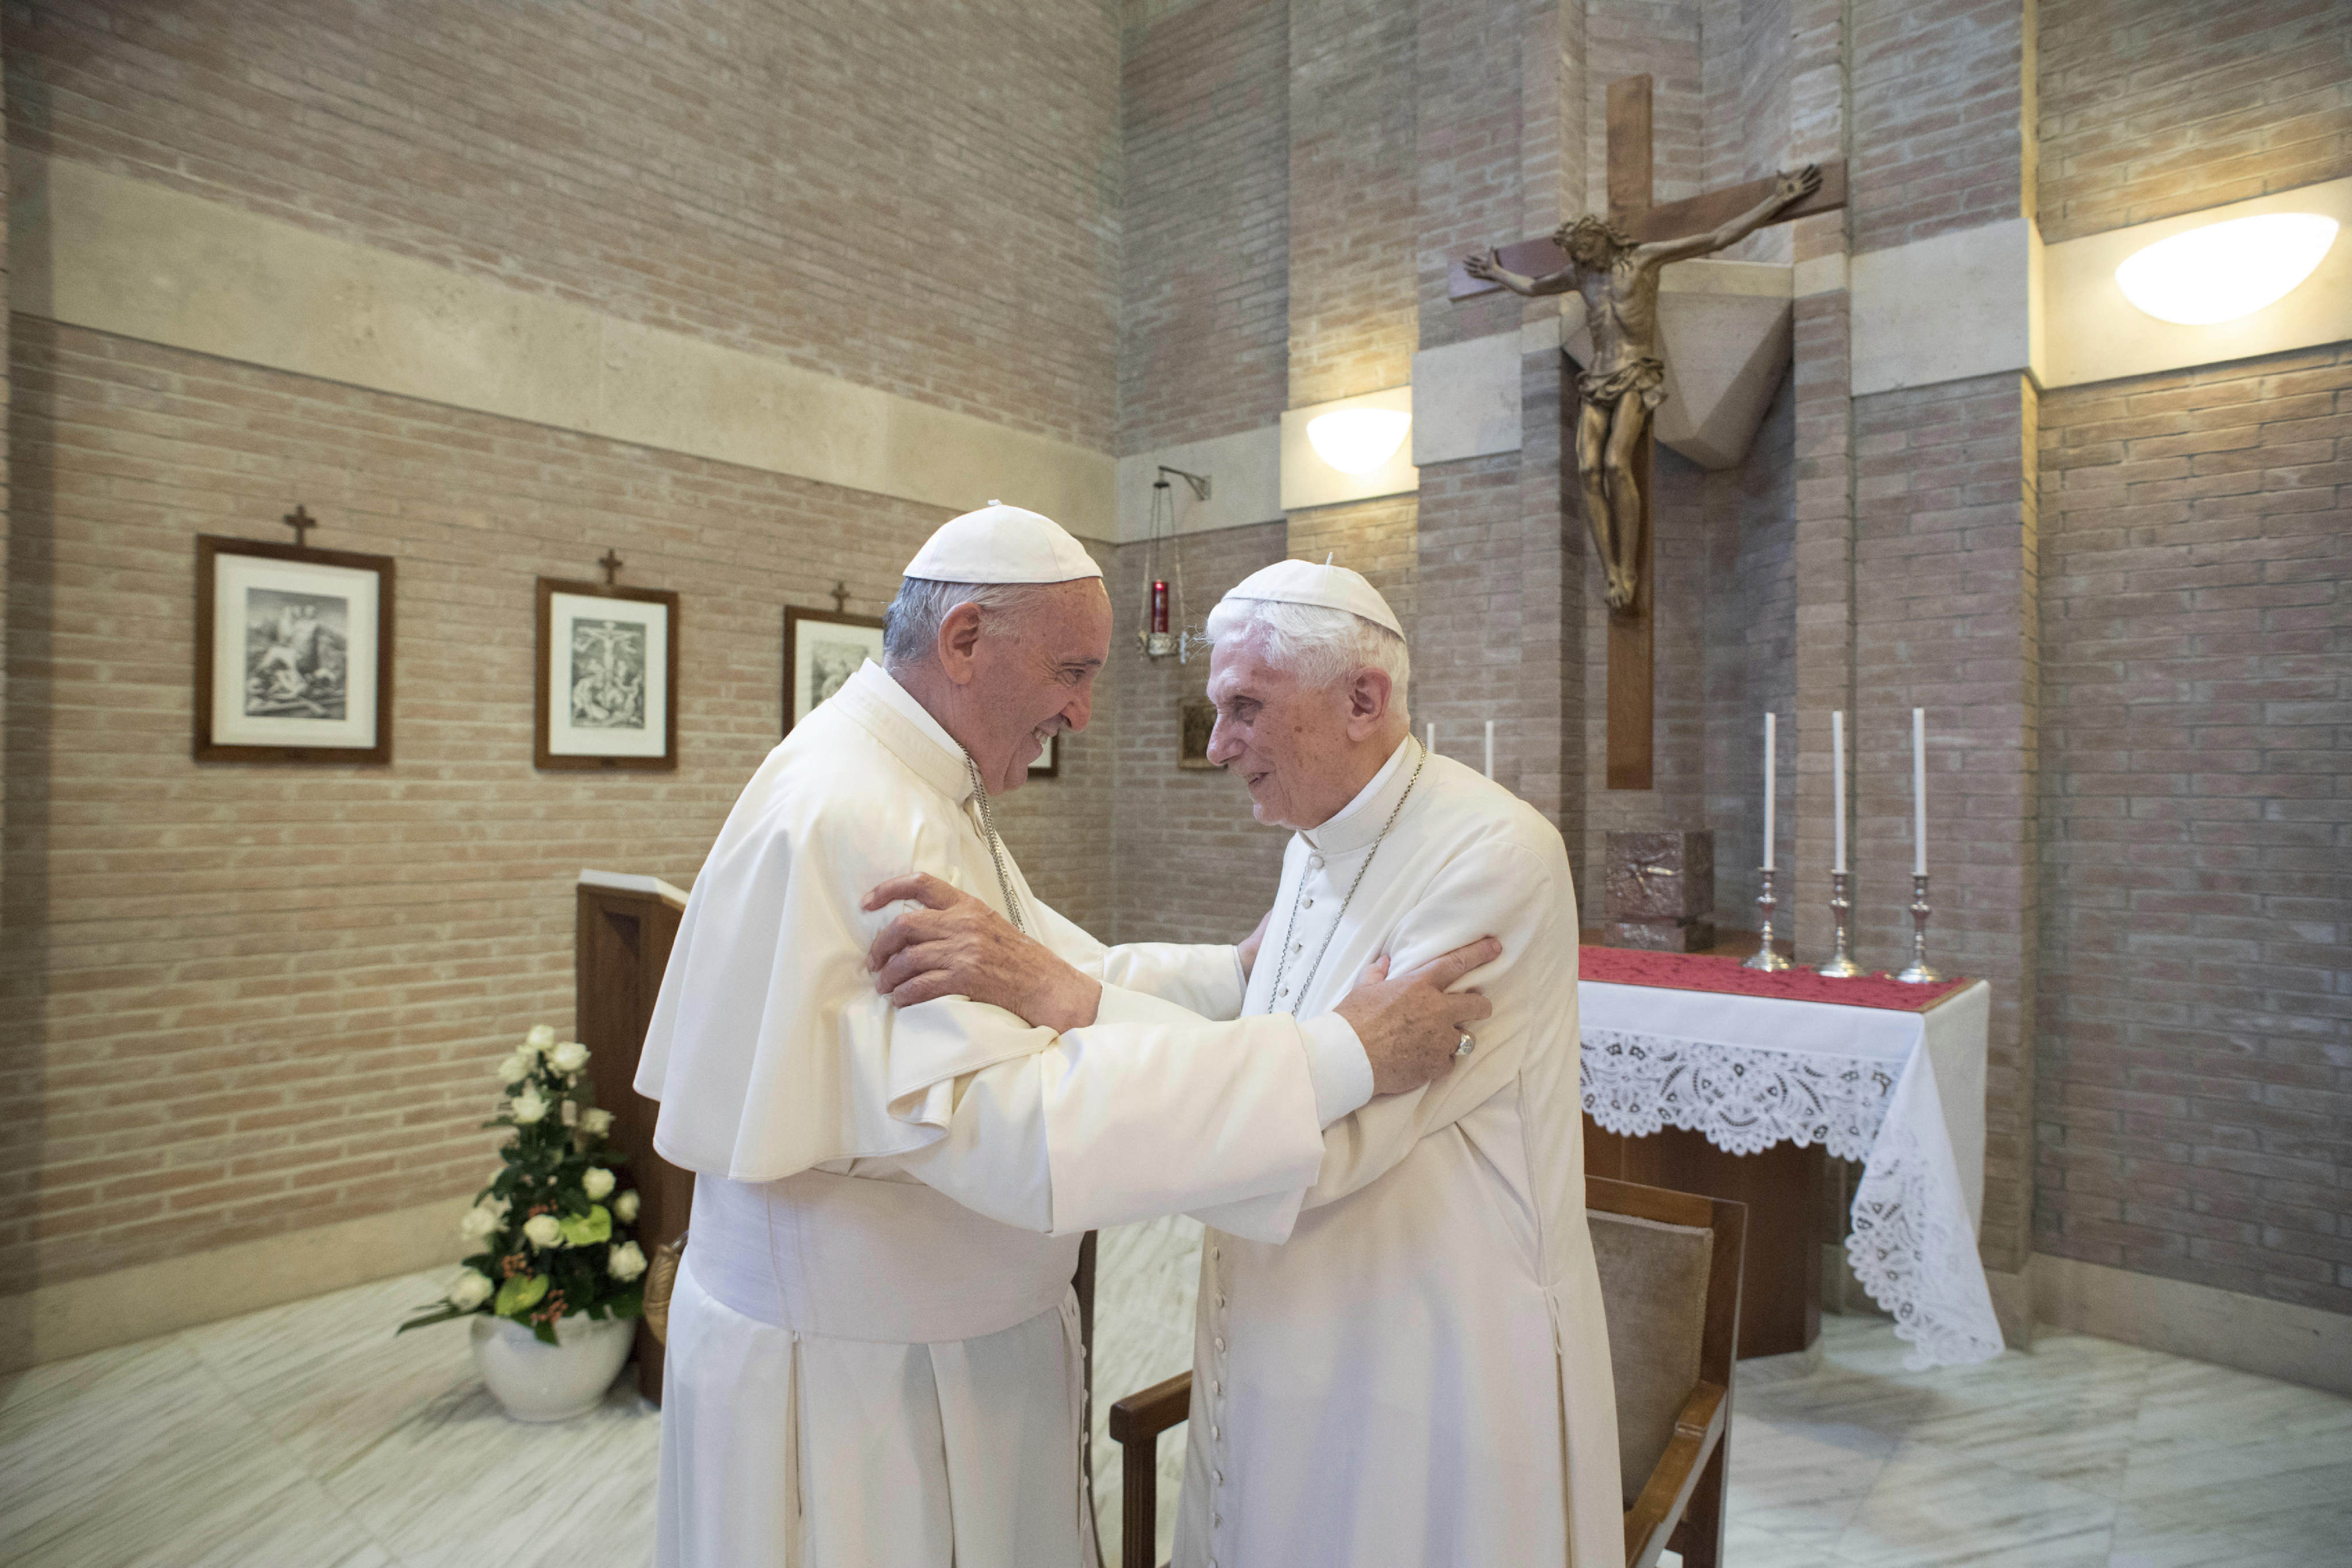 Pope Francis, left, embraces Emeritus Pope Benedict XVI, at the Vatican. Photo: AP